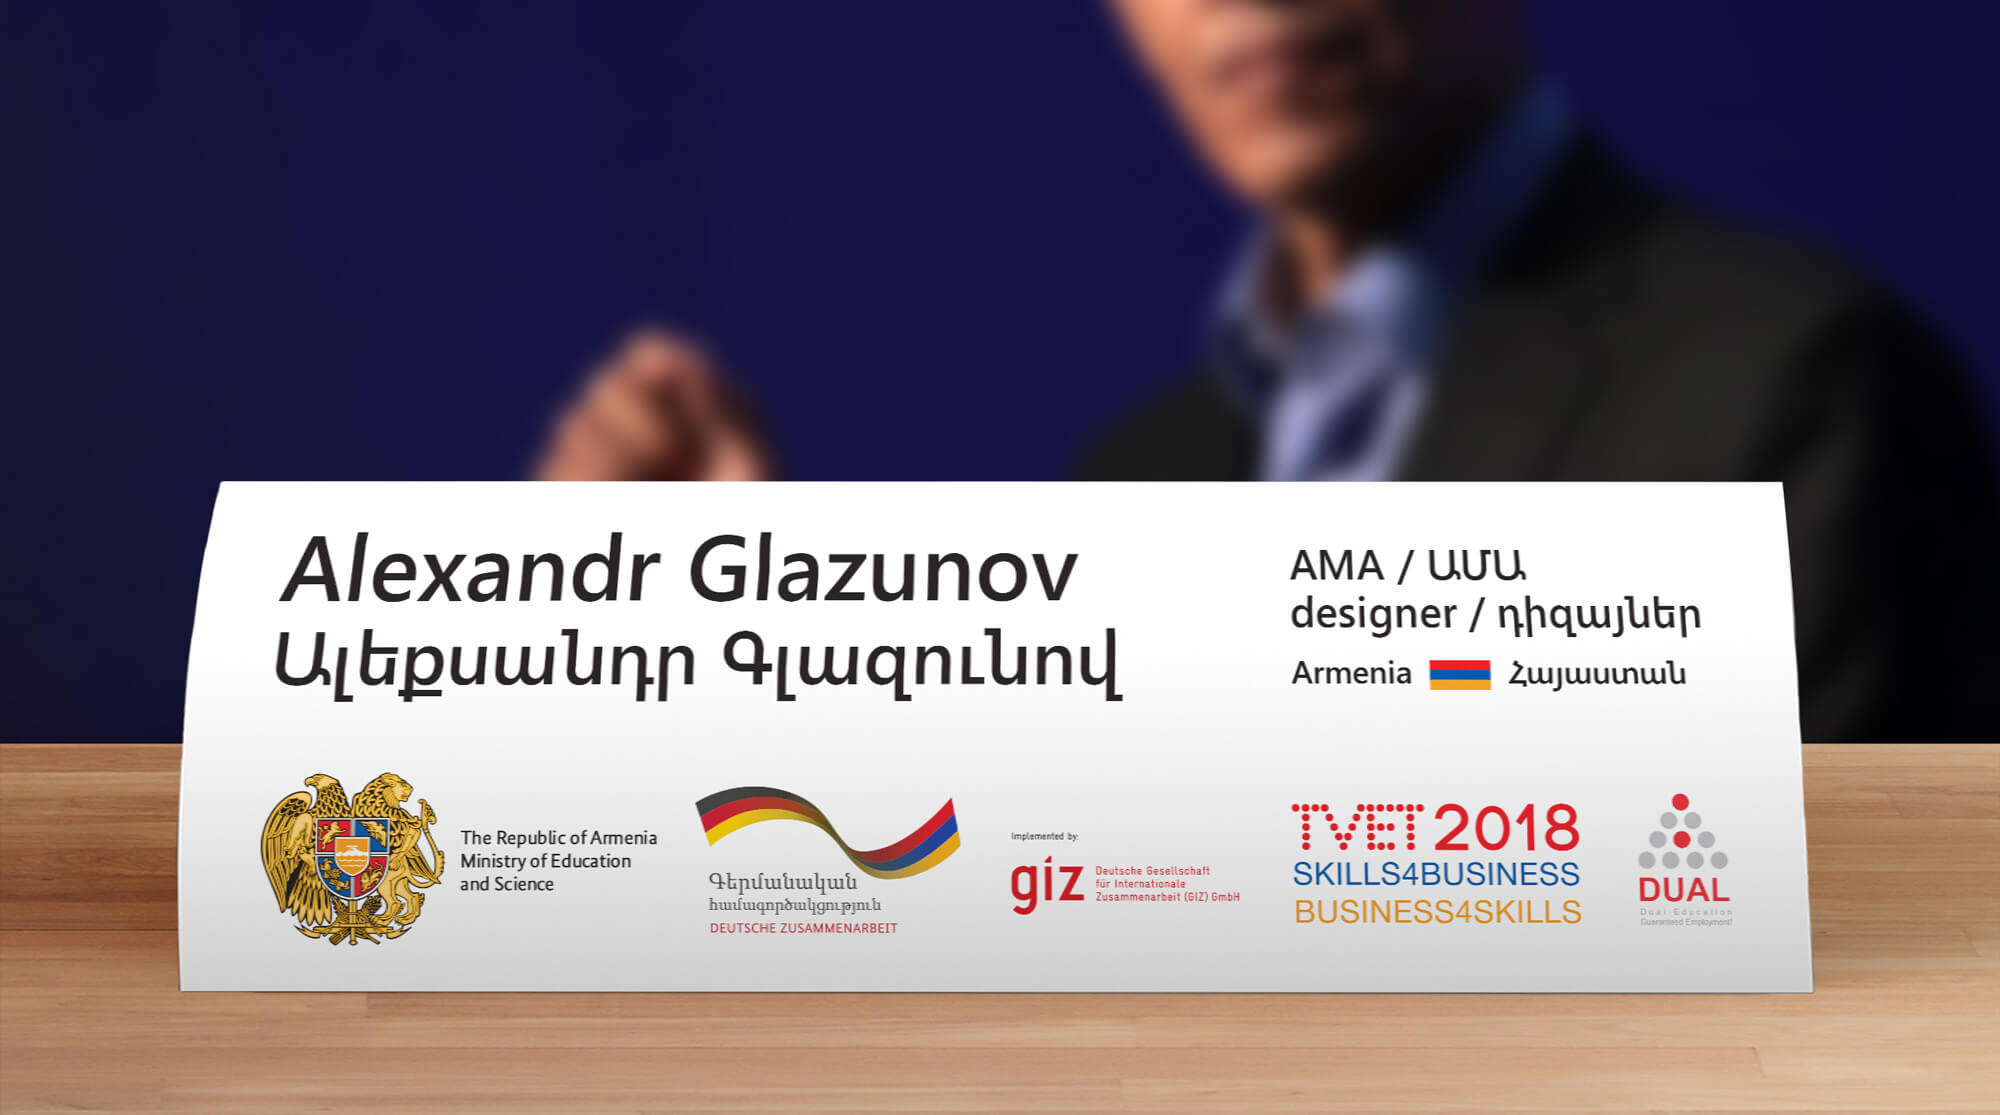 Стиль, сайт и оформление конференции TVET 2018